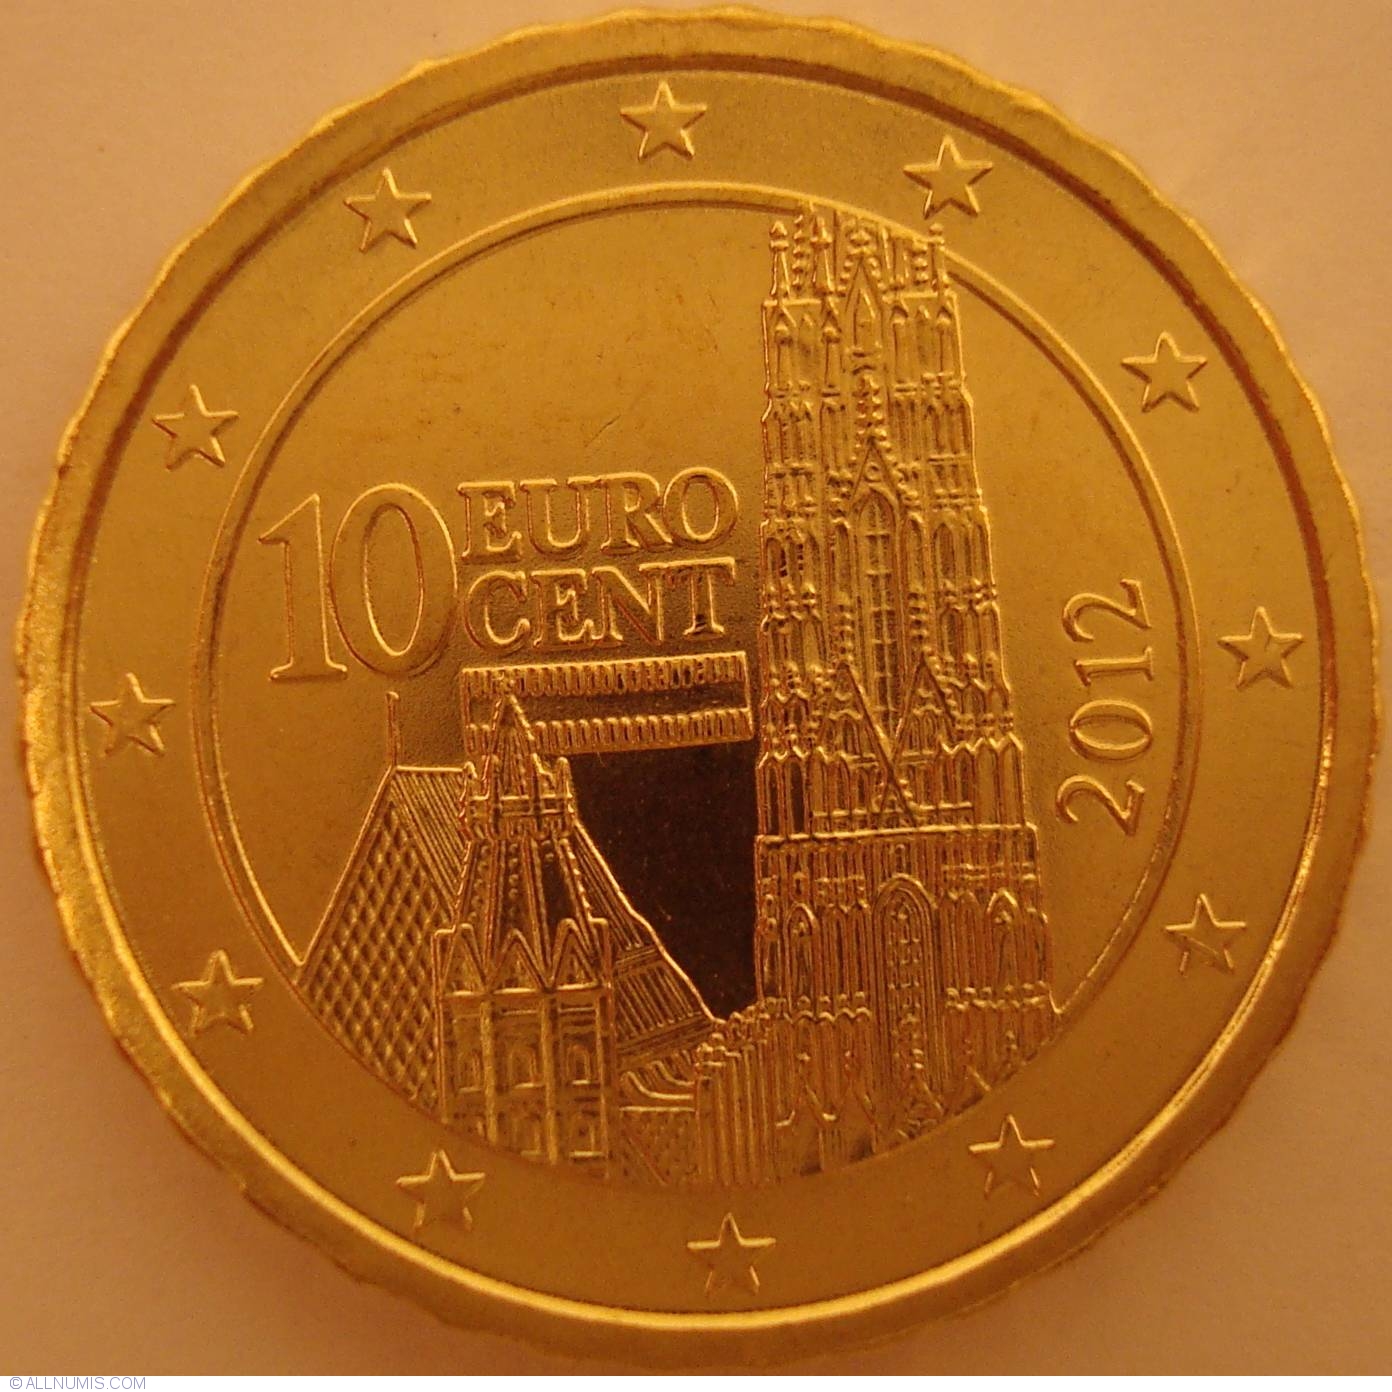 10 Euro Cent 2012, Euro (2010-2019) - Austria - Coin - 26832